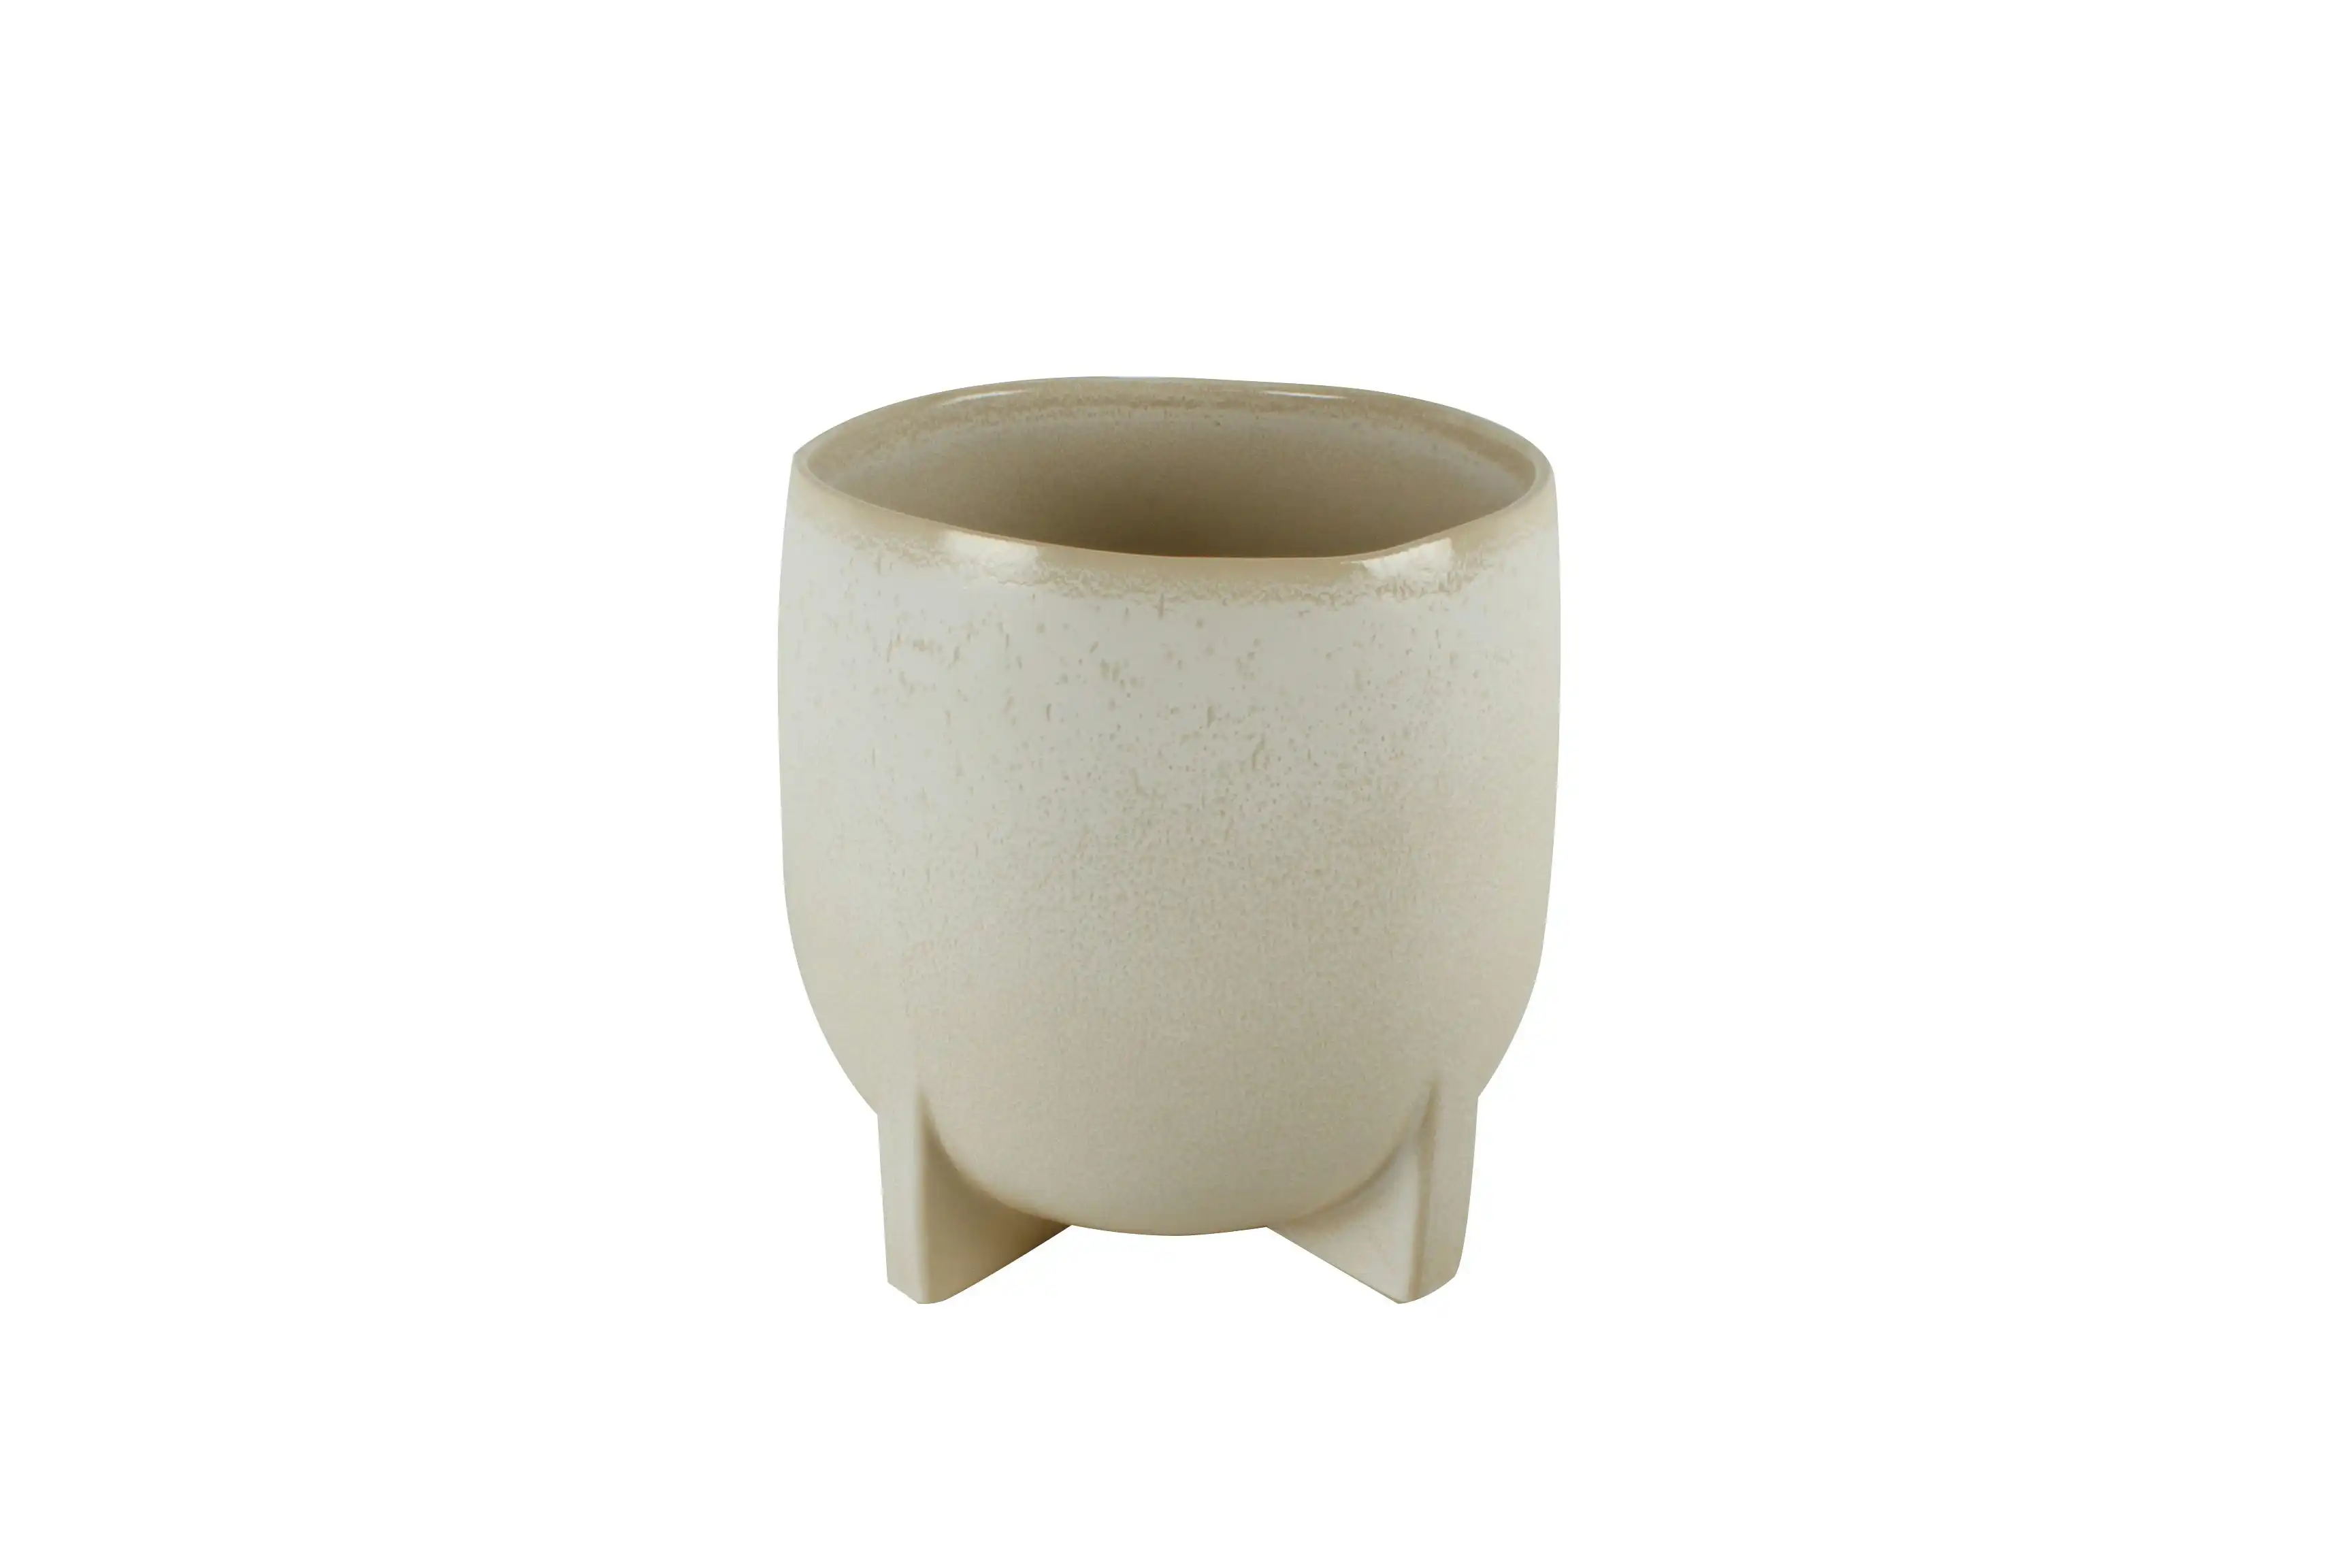 Alaia Ceramic Pot With Feet No Hole 27 x 26 cm